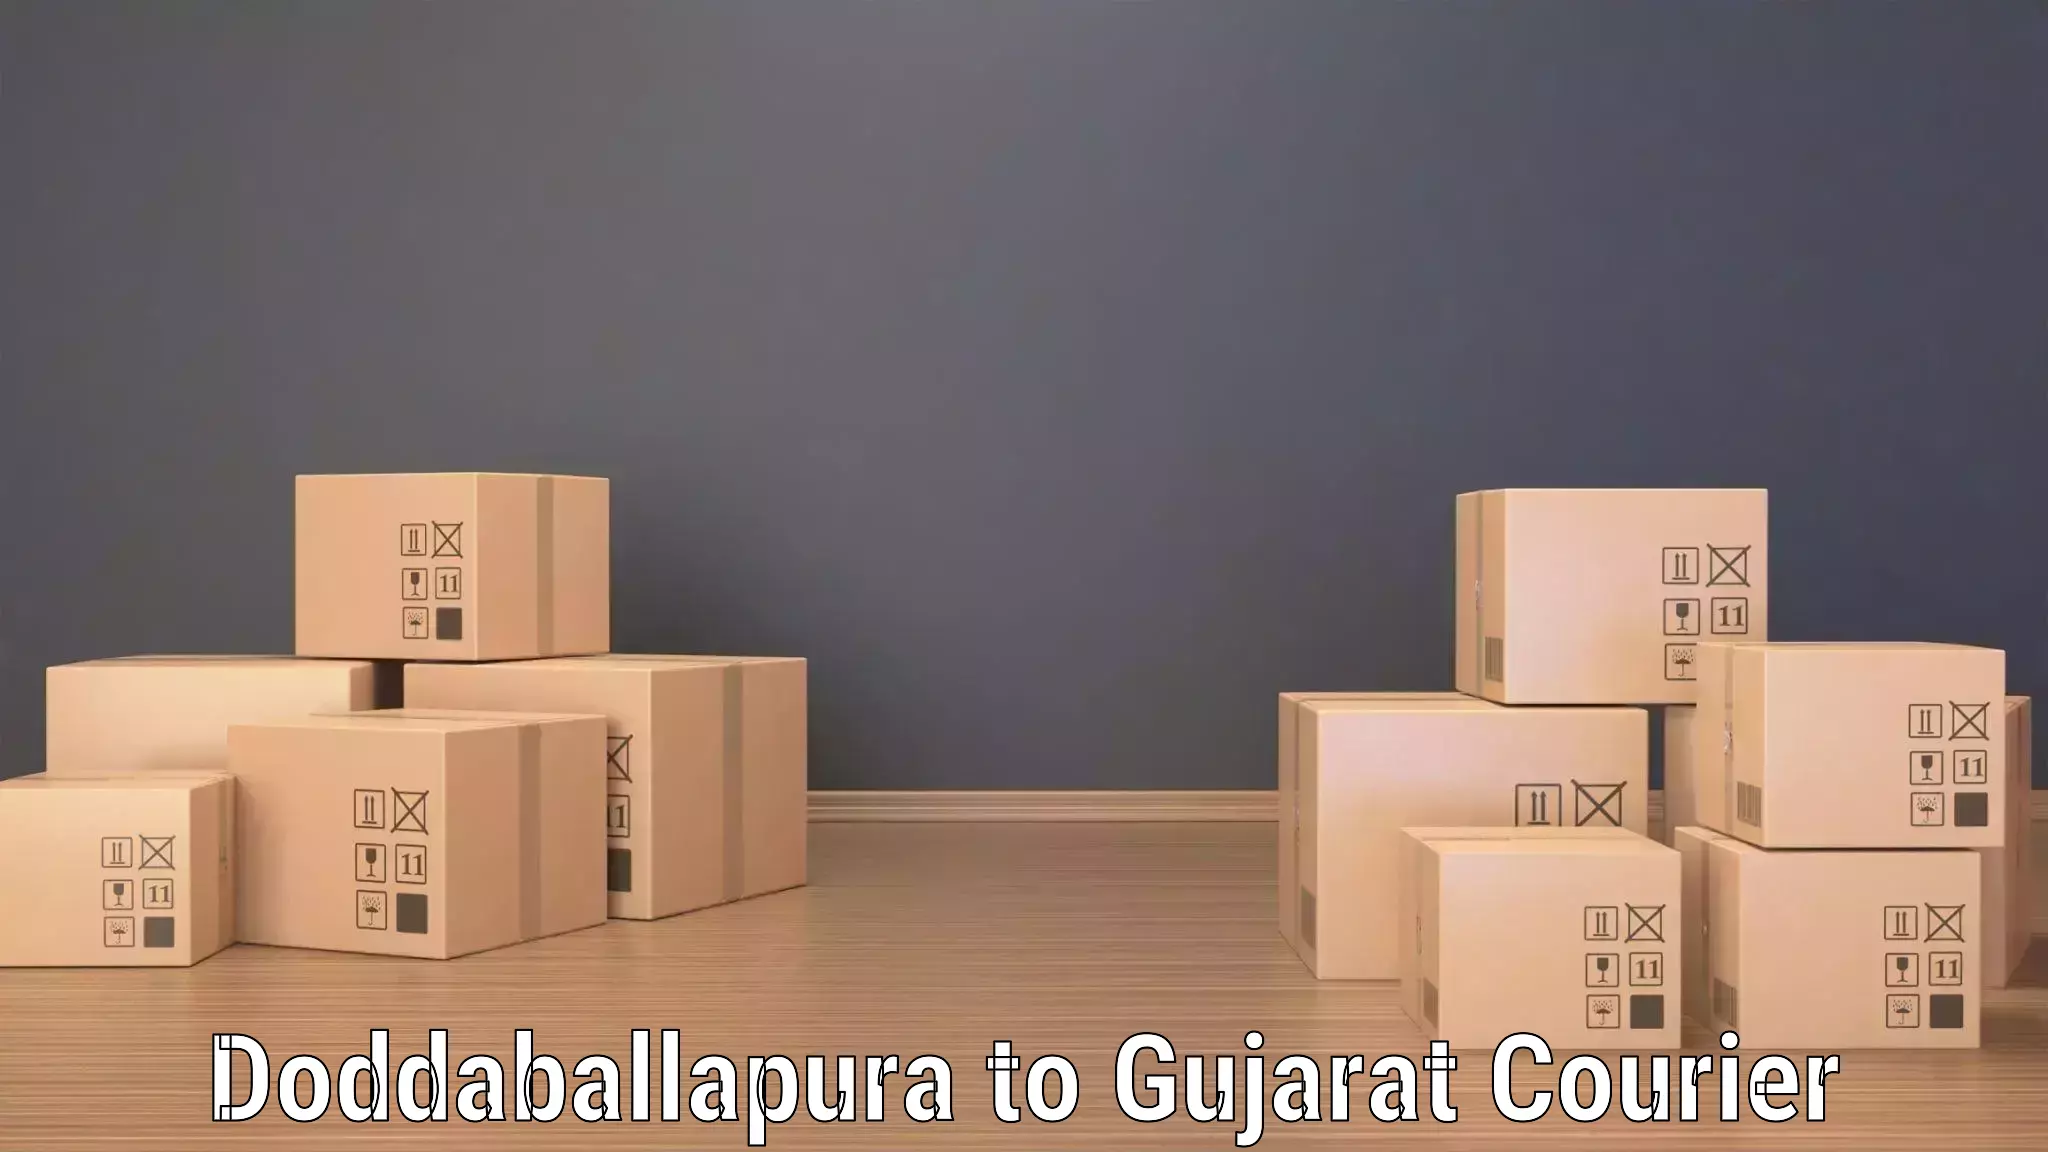 Courier service comparison Doddaballapura to Amreli